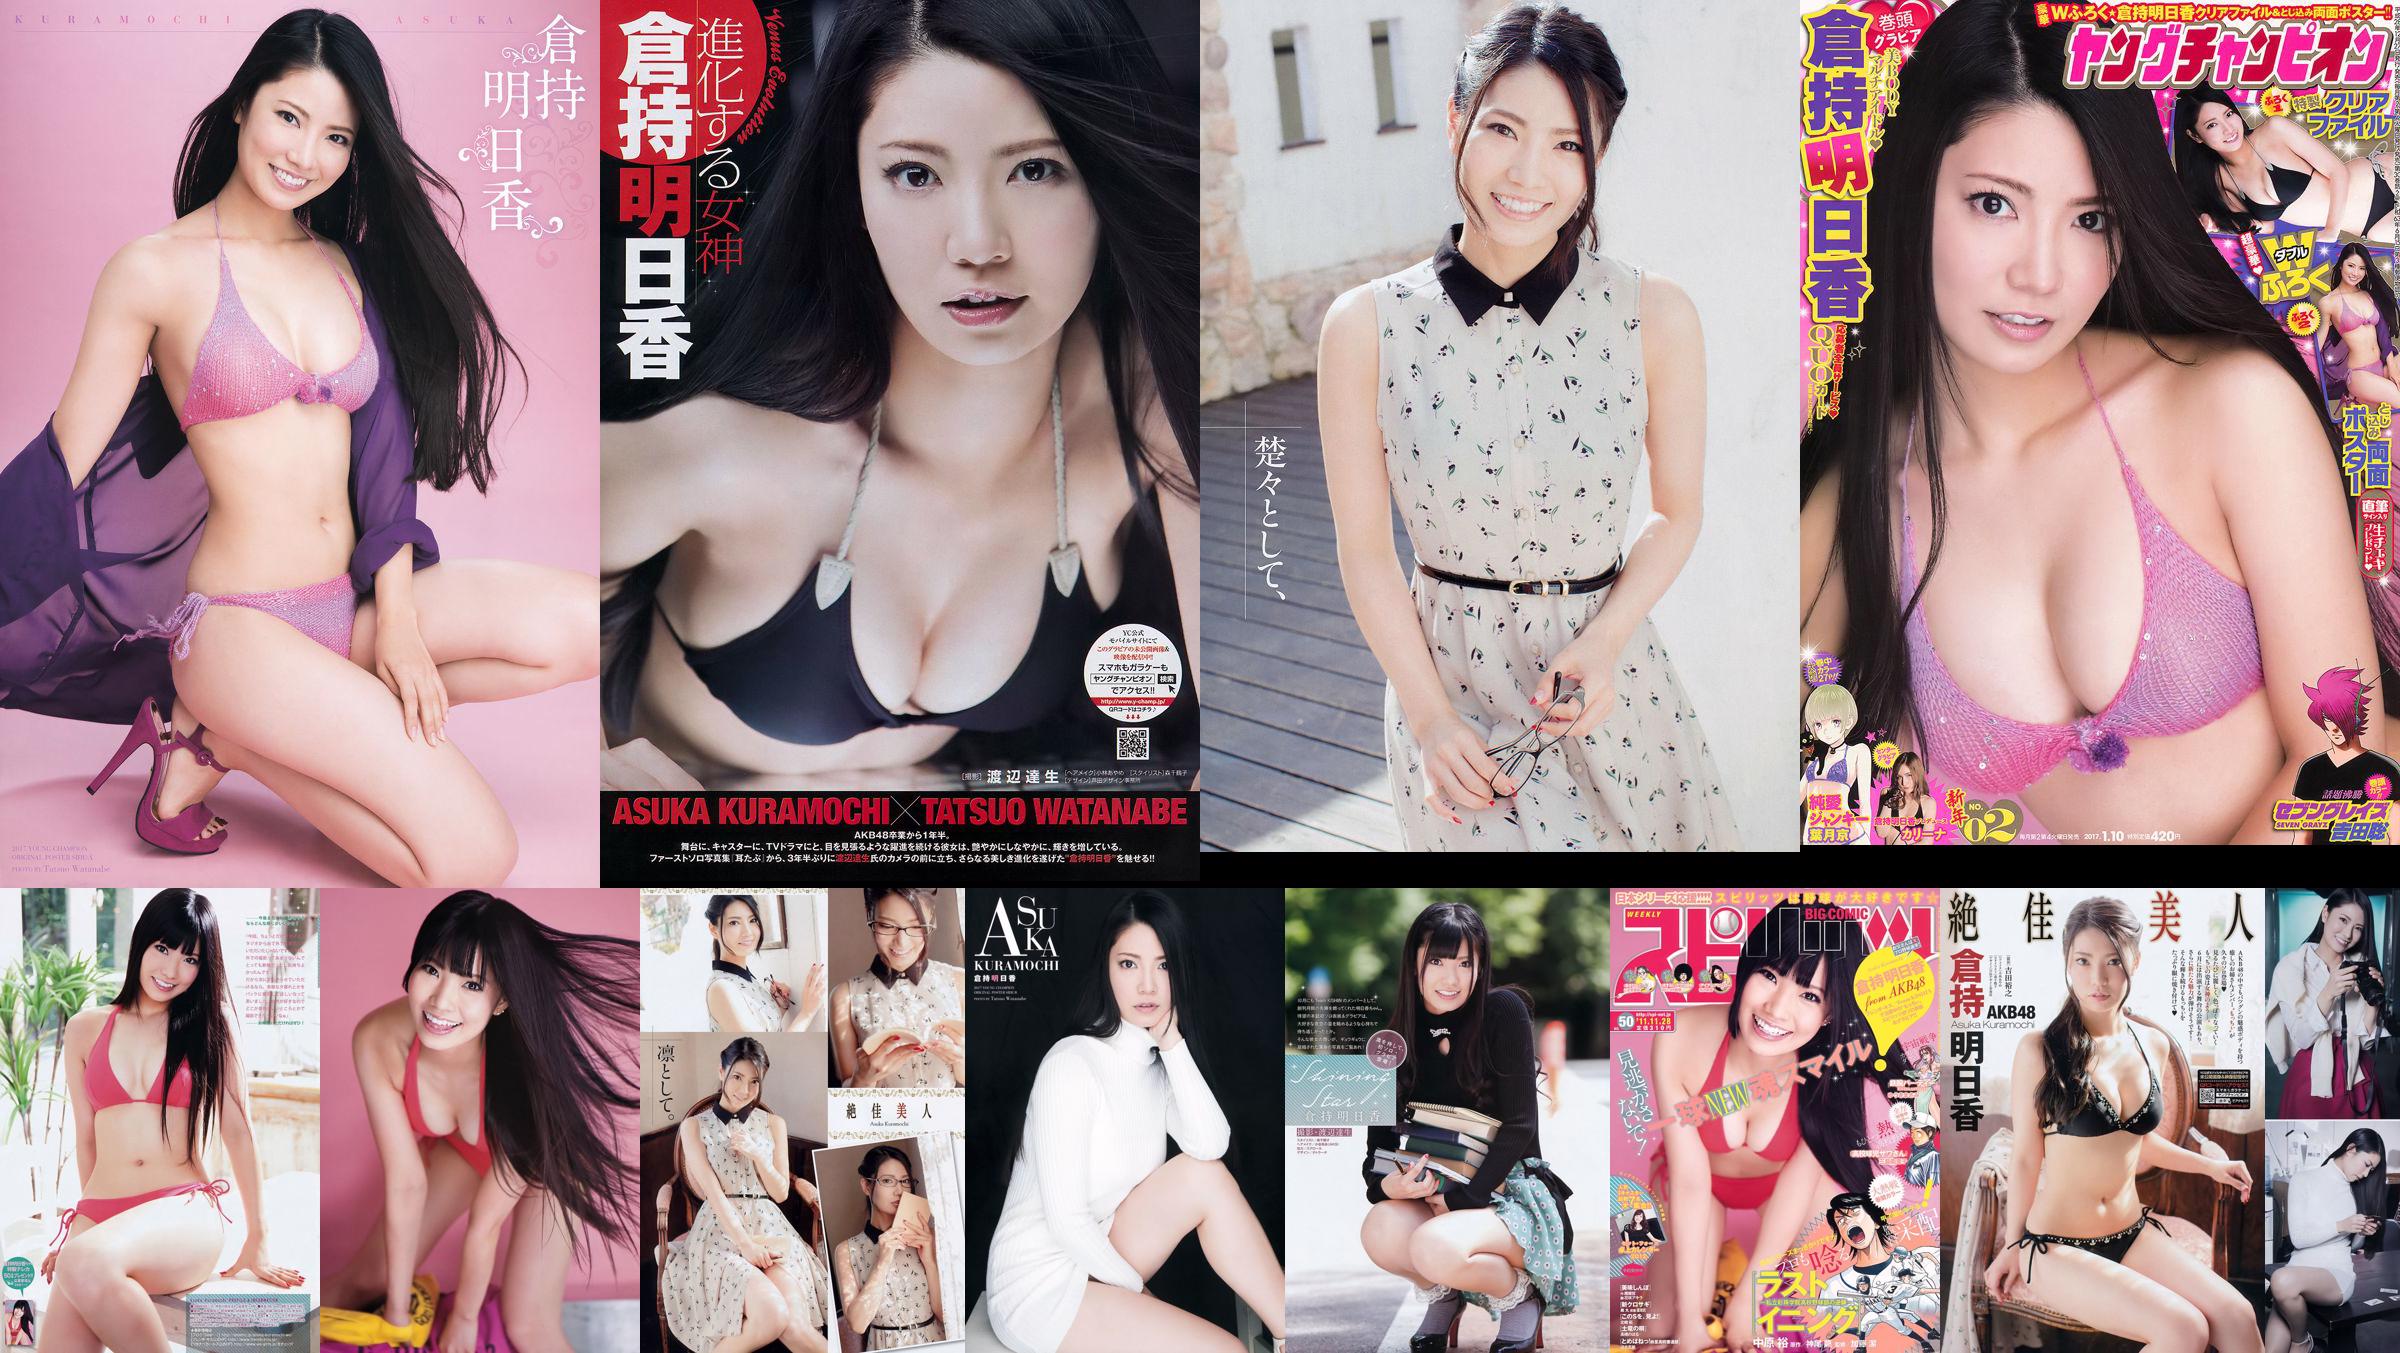 [Young Champion] Asuka Kuramochi 2015 No.09 Photo Magazine No.e5e1c1 Pagina 2